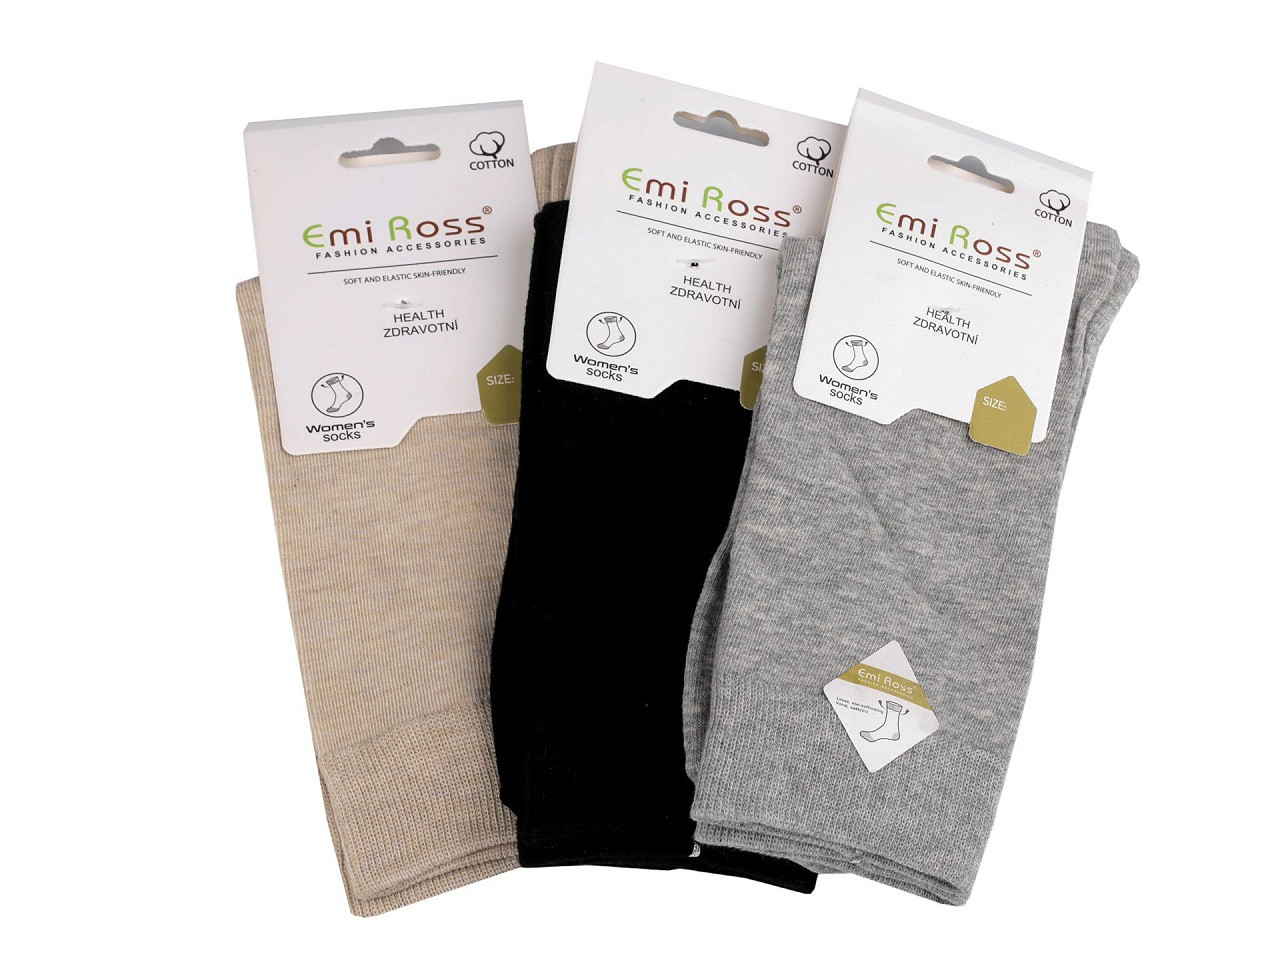 Dámské bavlněné ponožky Emi Ross, barva 19 (vel. 39-42) mix